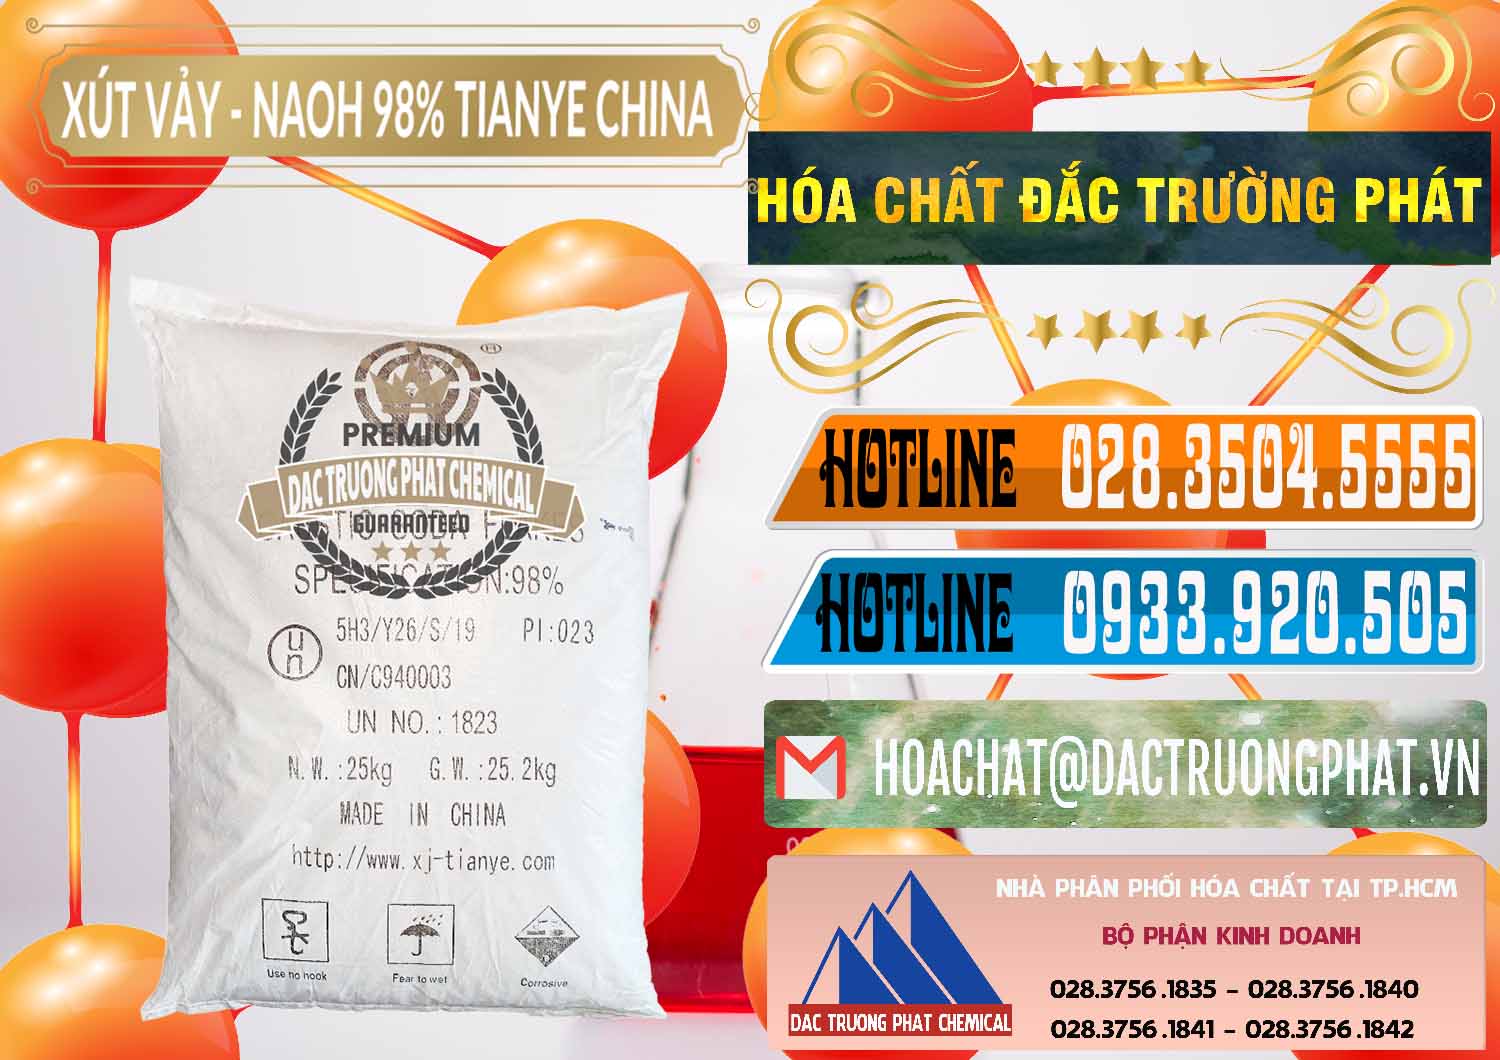 Bán - phân phối Xút Vảy - NaOH Vảy 98% Tianye Trung Quốc China - 0177 - Cty chuyên bán _ phân phối hóa chất tại TP.HCM - stmp.net